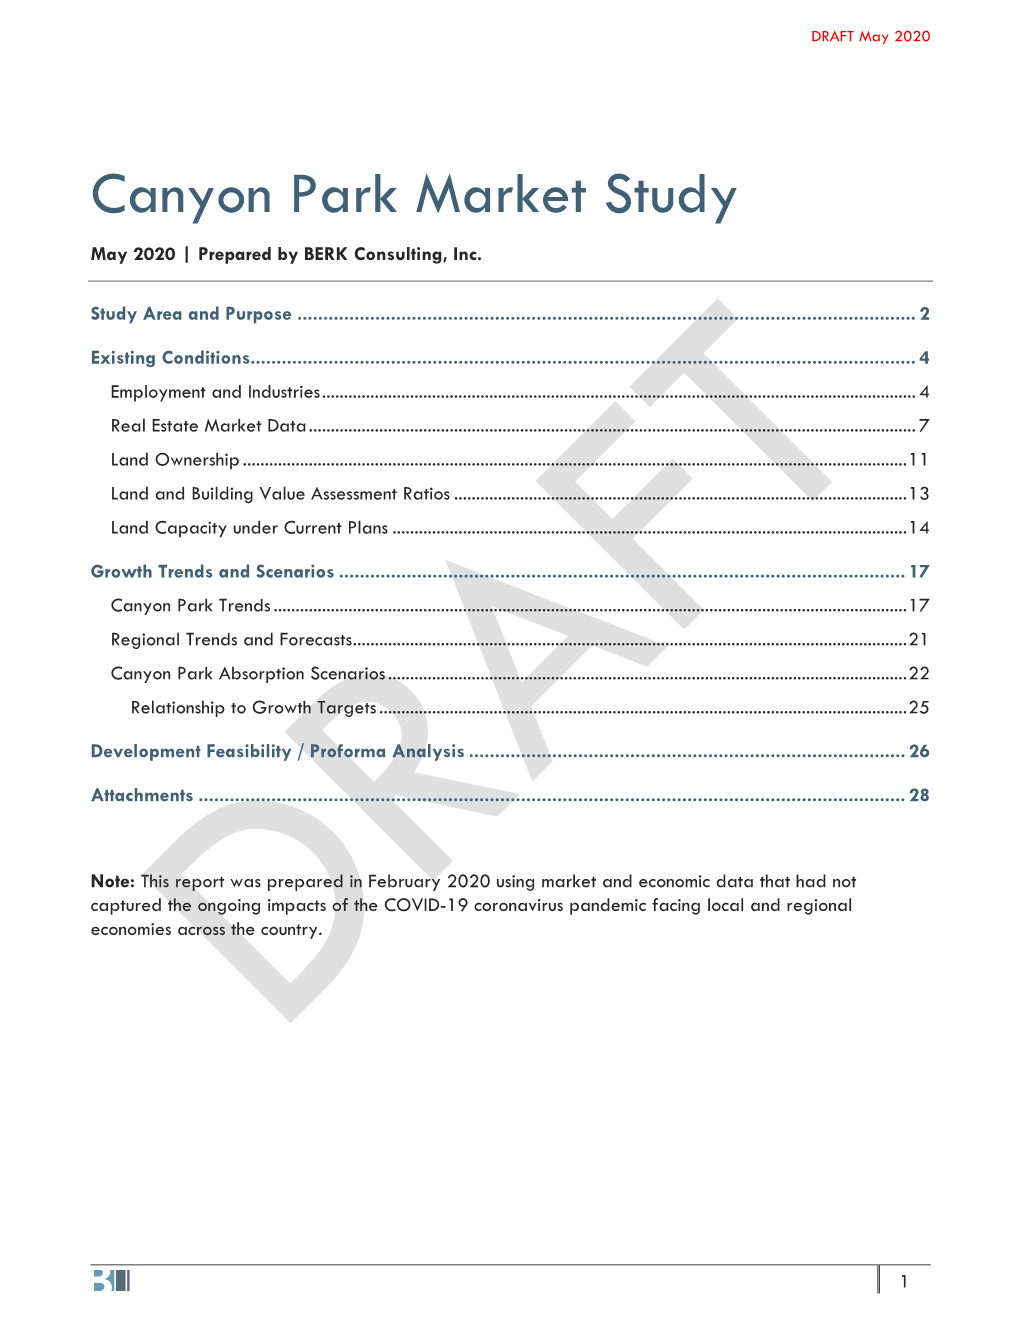 Canyon Park Market Study